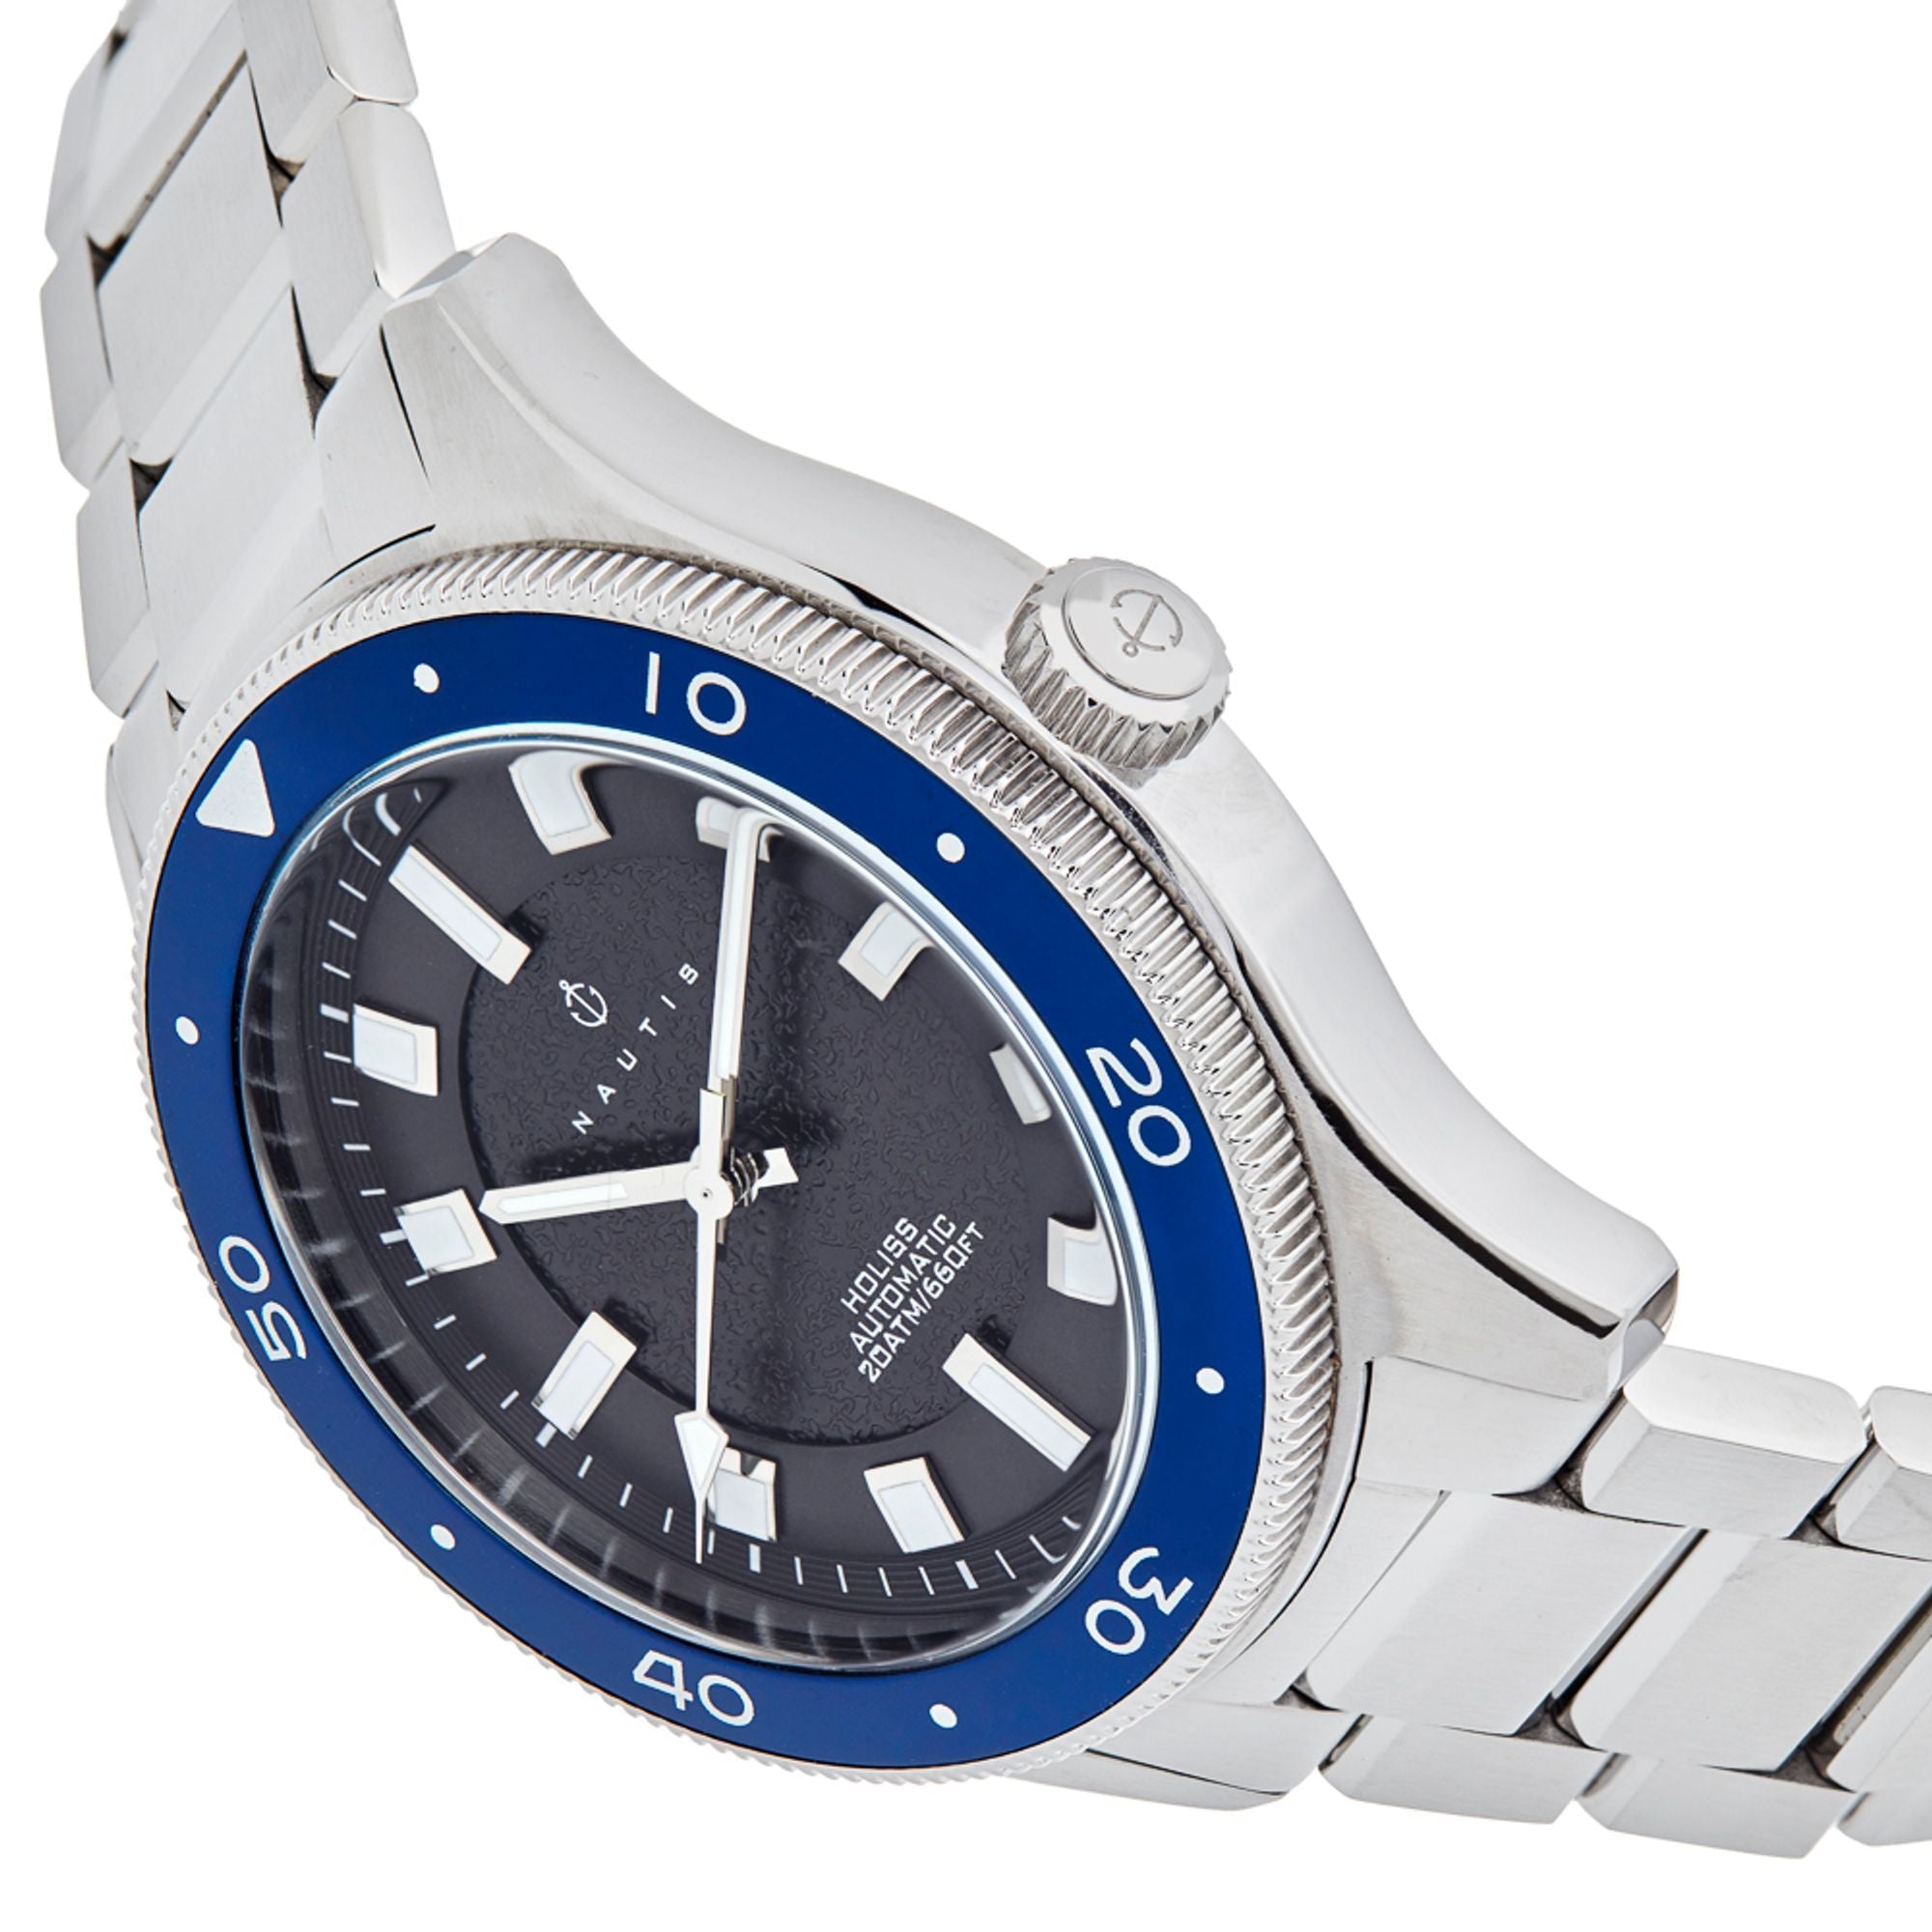 Nautis Holiss Automatic Watch - Silver/Blue - NAUN103-2